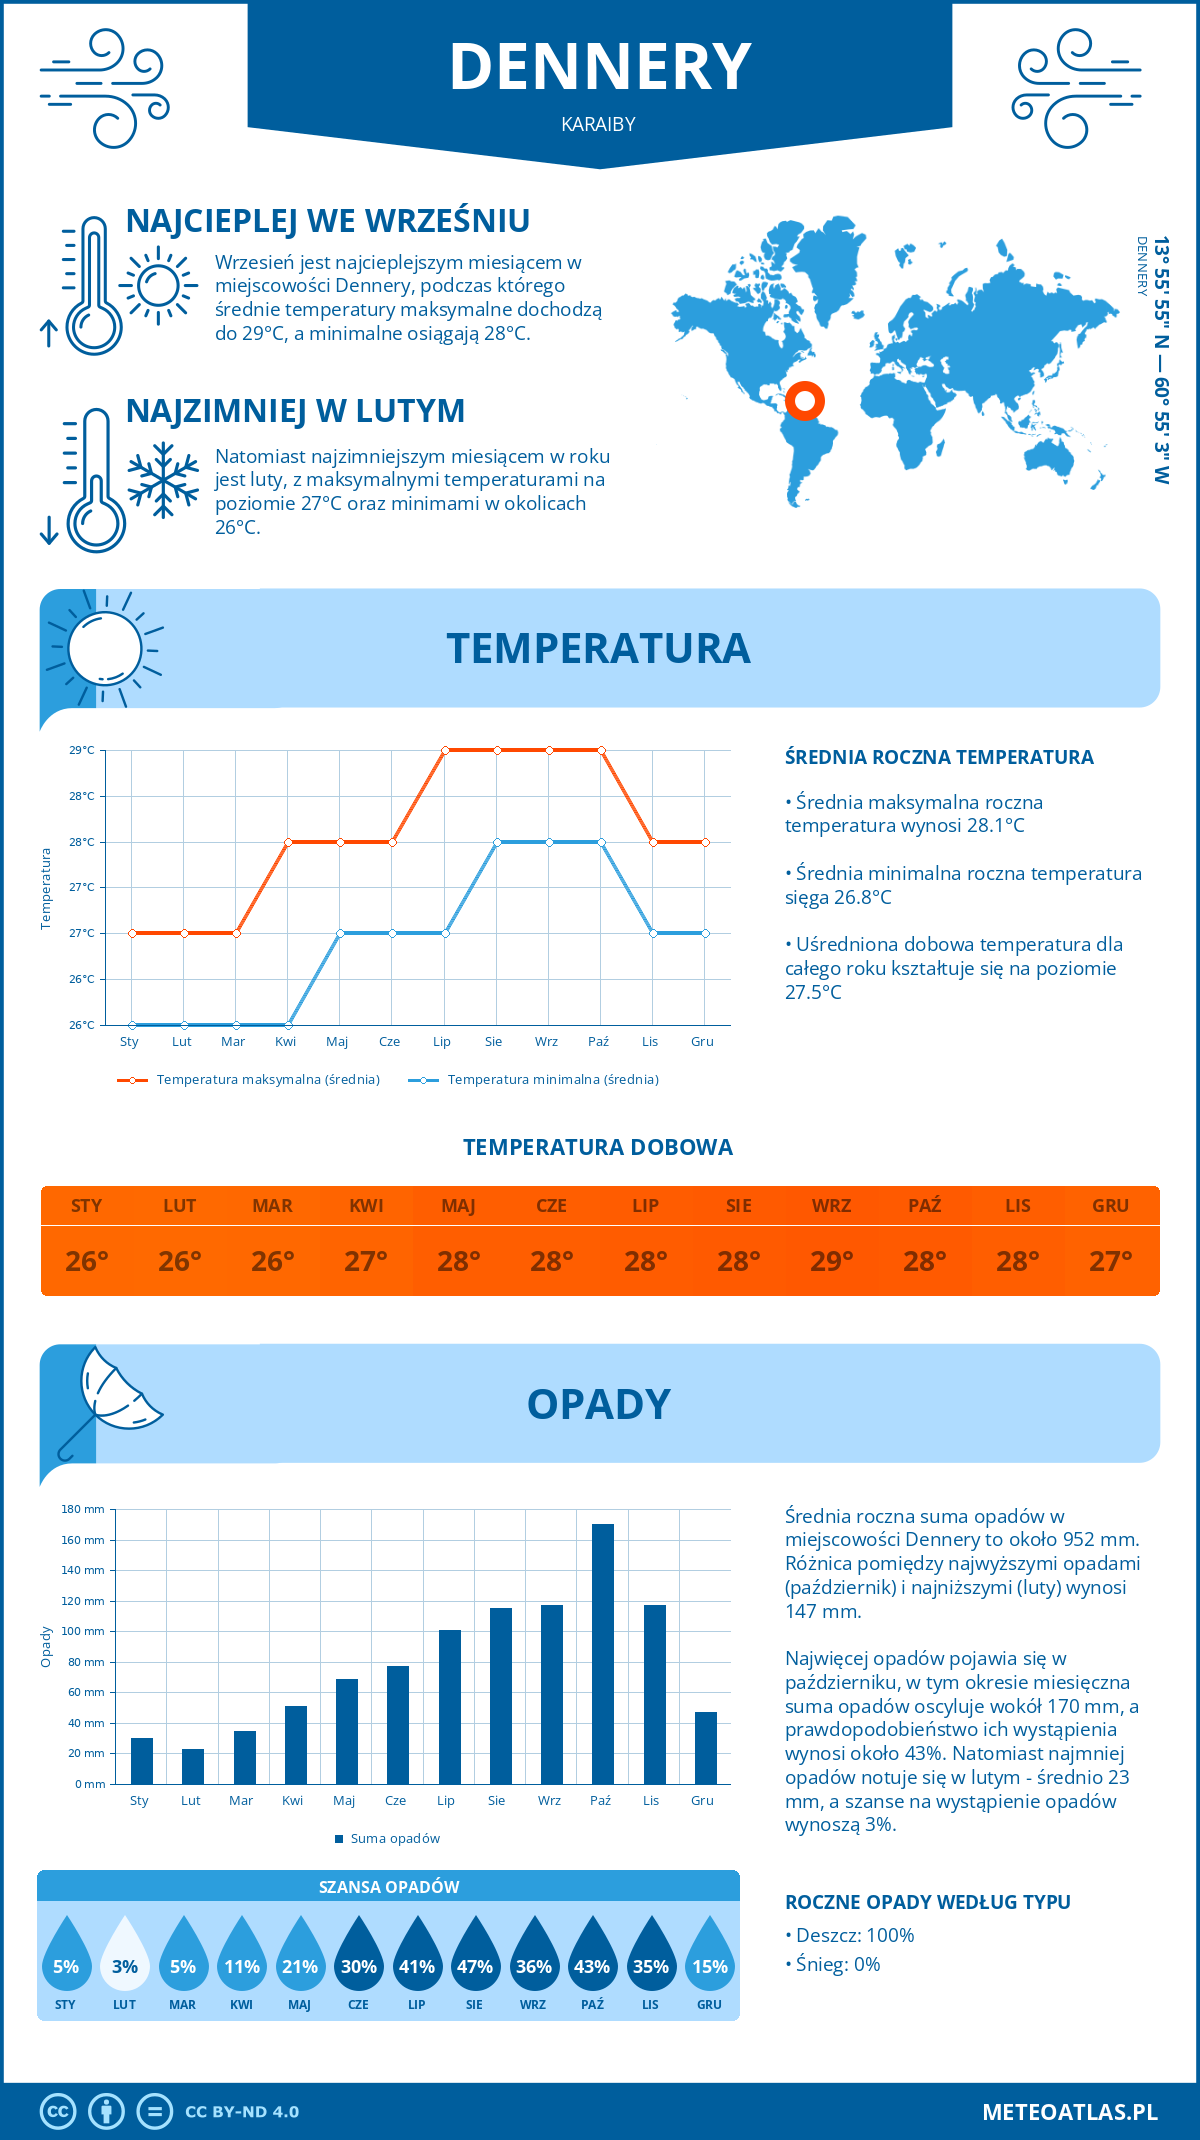 Pogoda Dennery (Karaiby). Temperatura oraz opady.